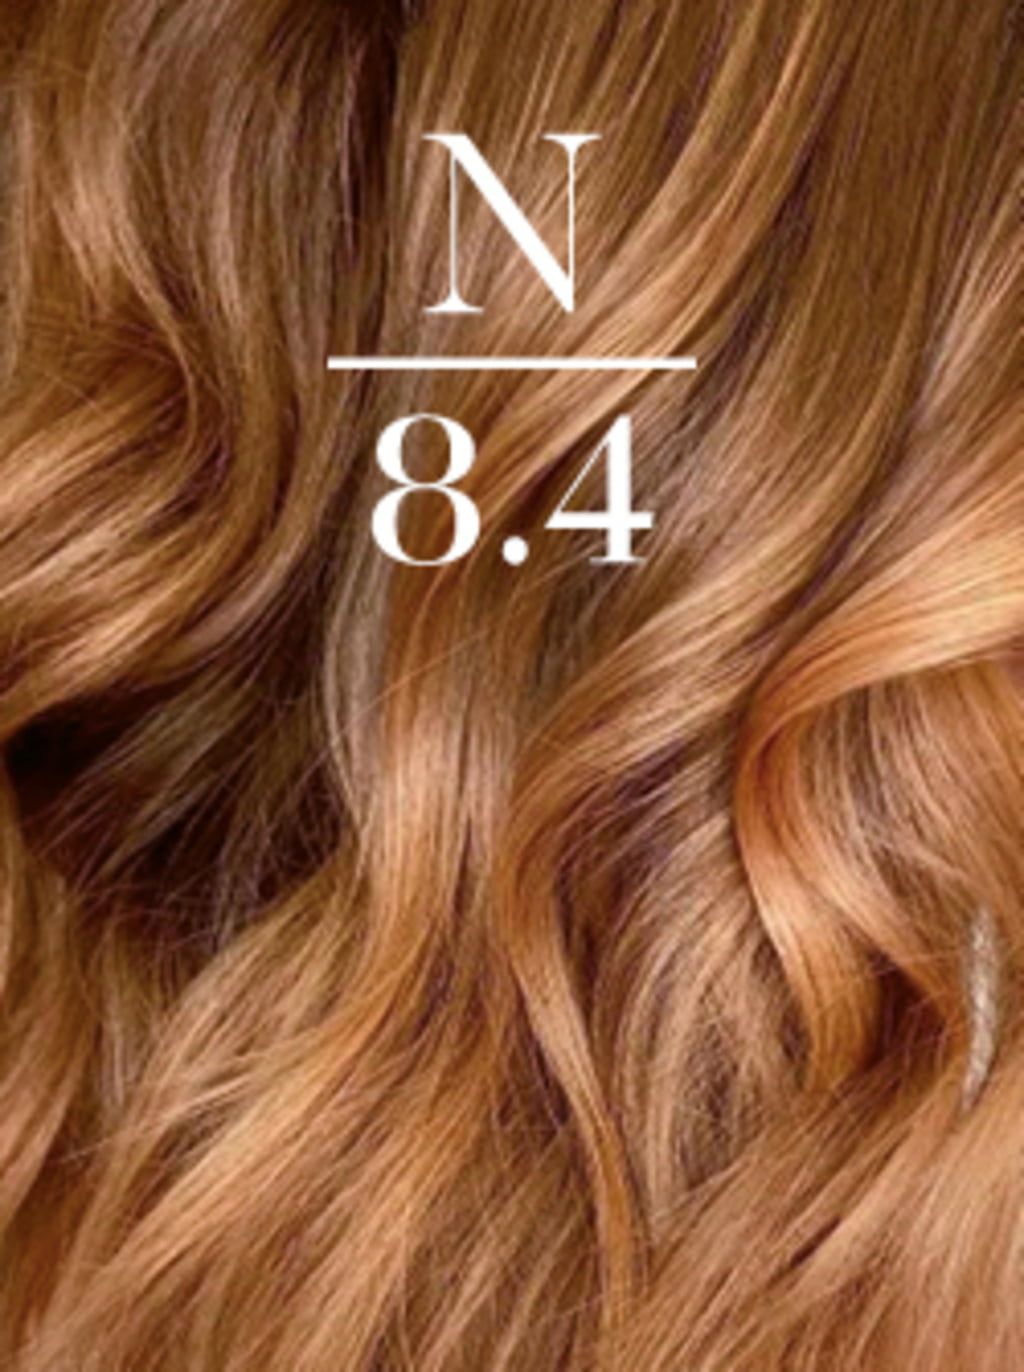 NOELIE N 8.4 Honey Caramel Mix Blonde Healing Herbs Hair Color